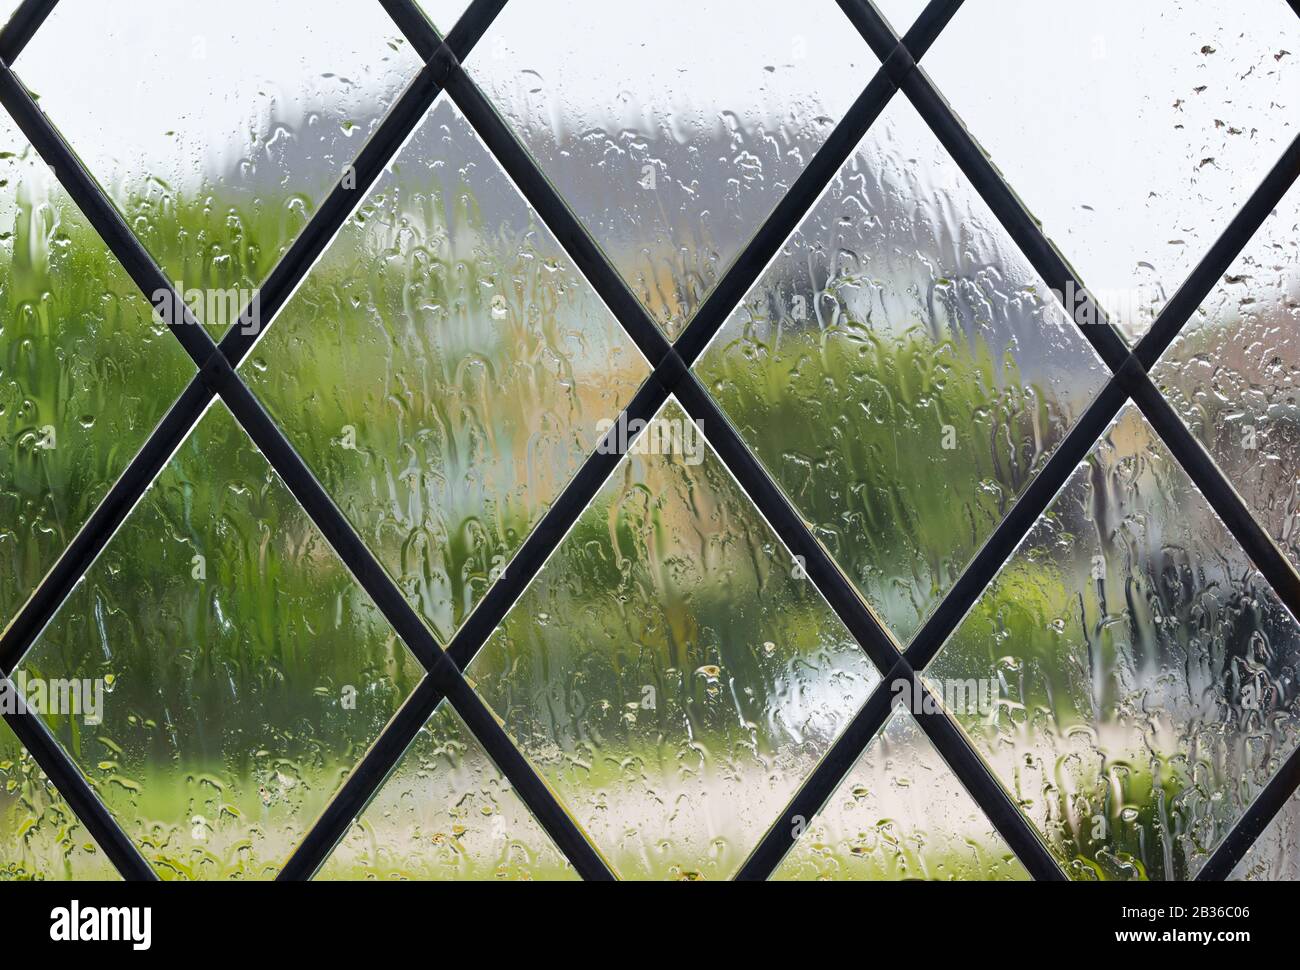 Pioggia sulla finestra quando si guarda all'esterno mentre piove in una giornata bagnata del tipico clima britannico, per illustrare il soggiorno a casa a causa di COVID19. Foto Stock